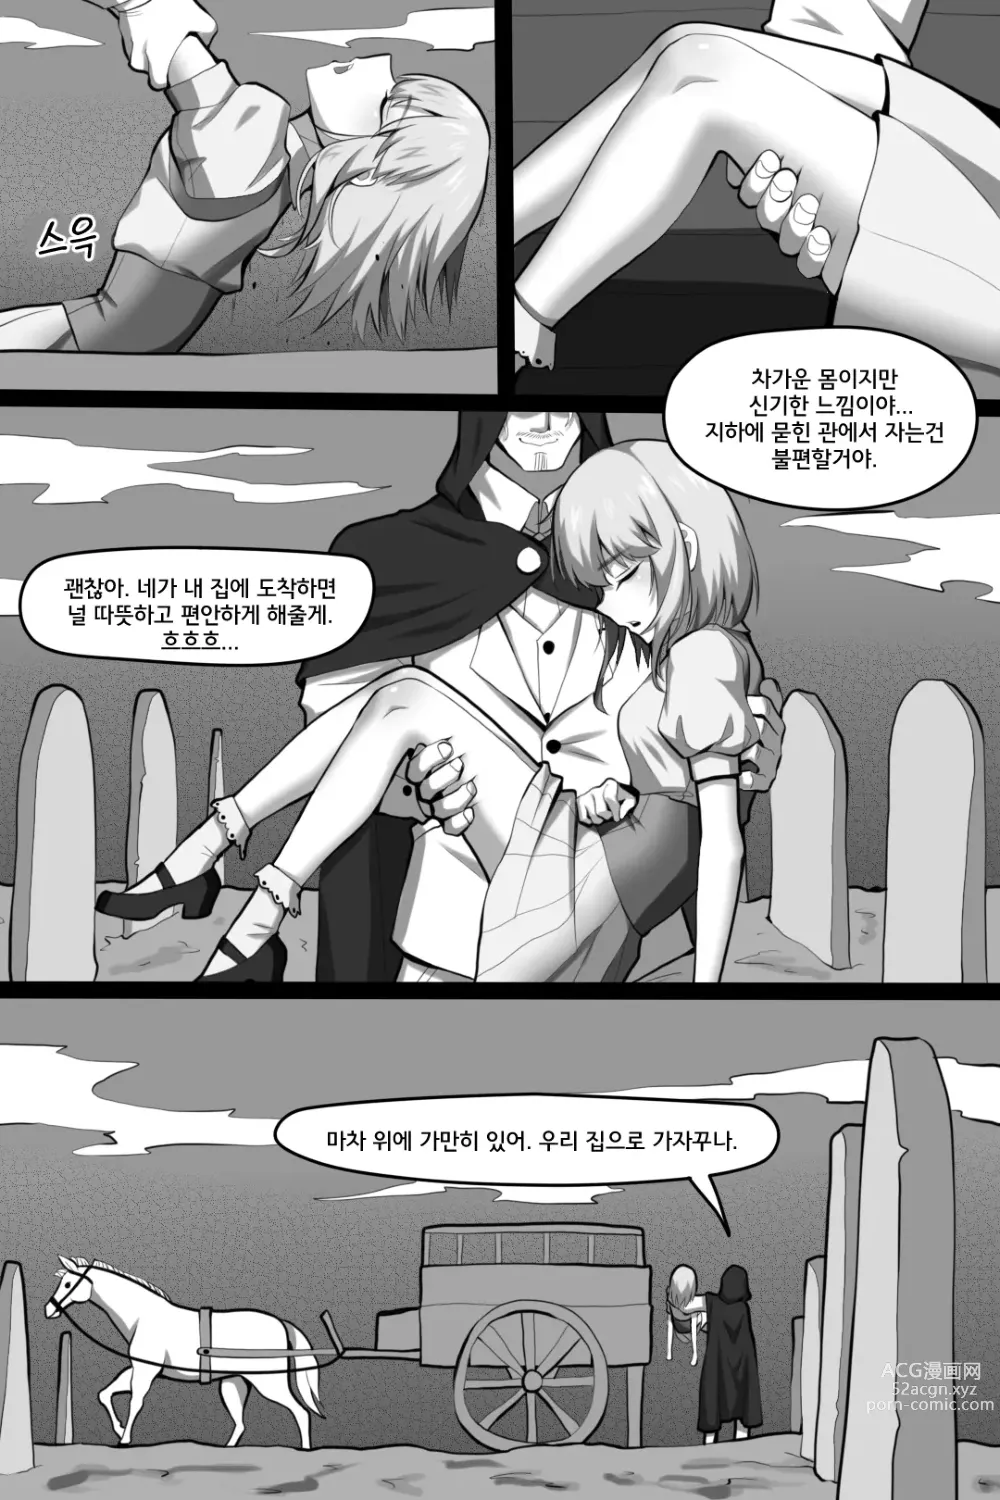 Page 7 of doujinshi 빈리안 시 1화: 비밀을 쓰는 자